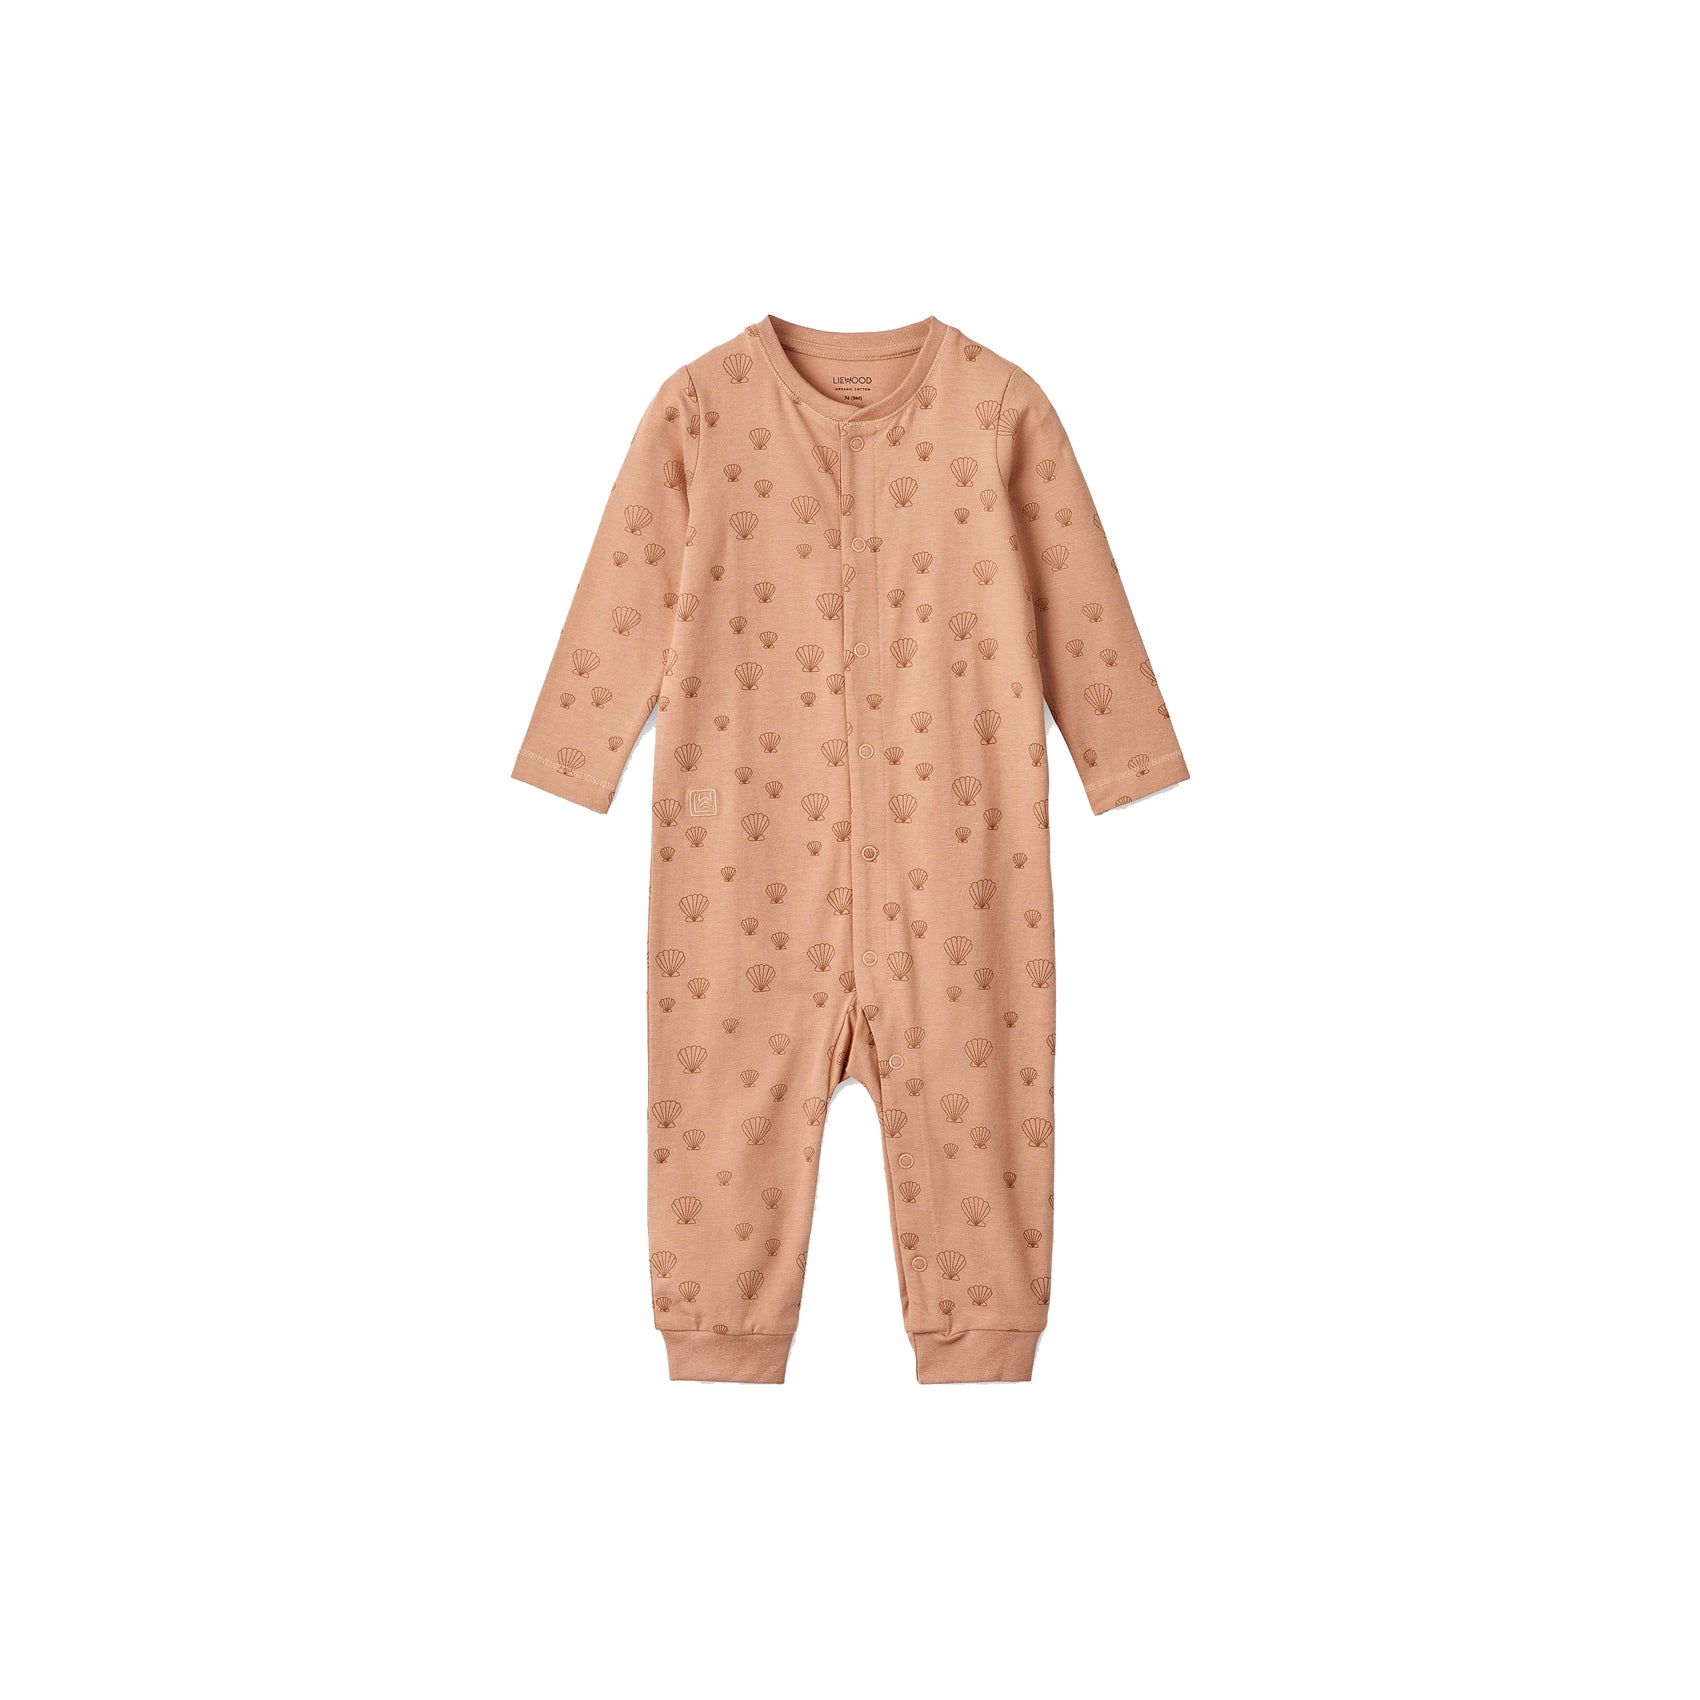 Comfortabel én hip: de zachte pyjama jumpsuit birk in de variant sea shell/pale tuscany uit de collectie van Liewood. 100% organisch katoen, lange mouwen, handige drukknoopjes en een lieve print. VanZus